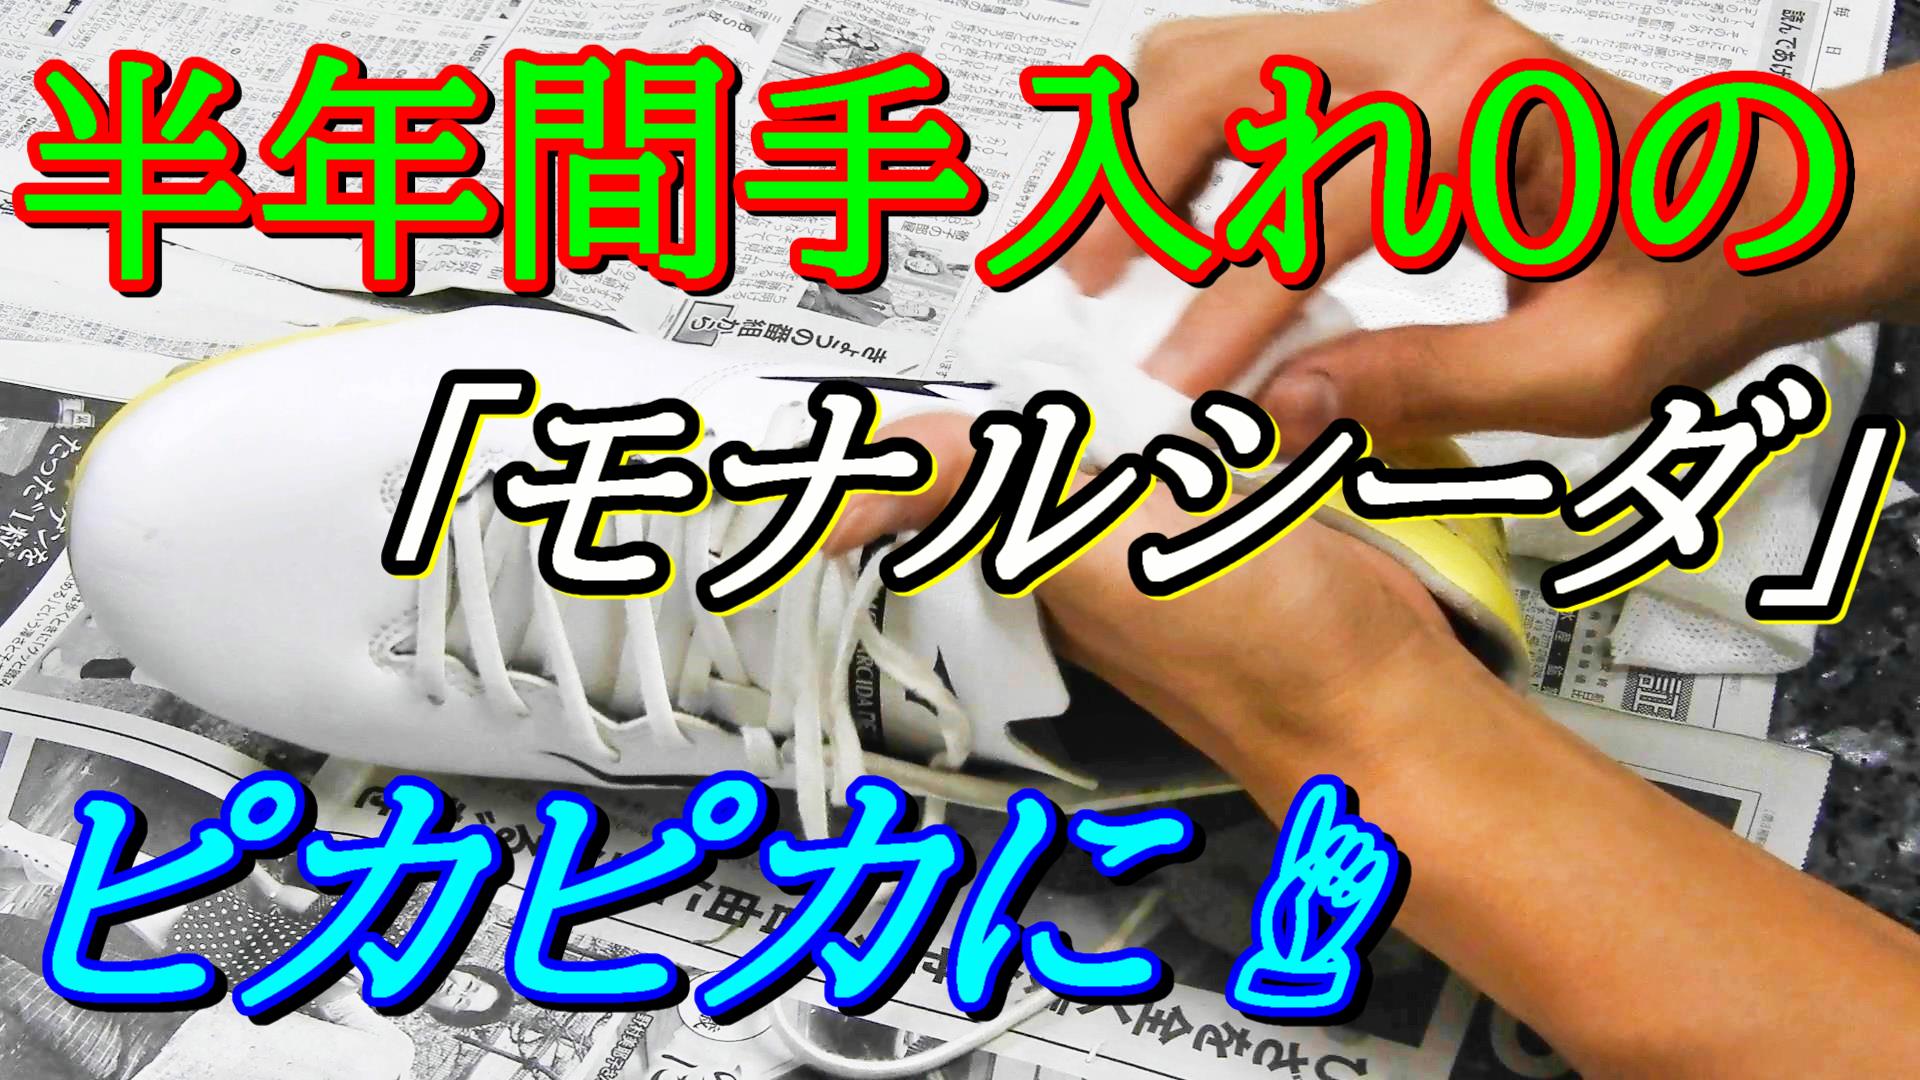 モナルシーダネオプロ Neo Pro の手入れ サッカースパイク 人工皮革の手入れ マイクロファイバー 日本から肥満をなくす こうへい のブログ